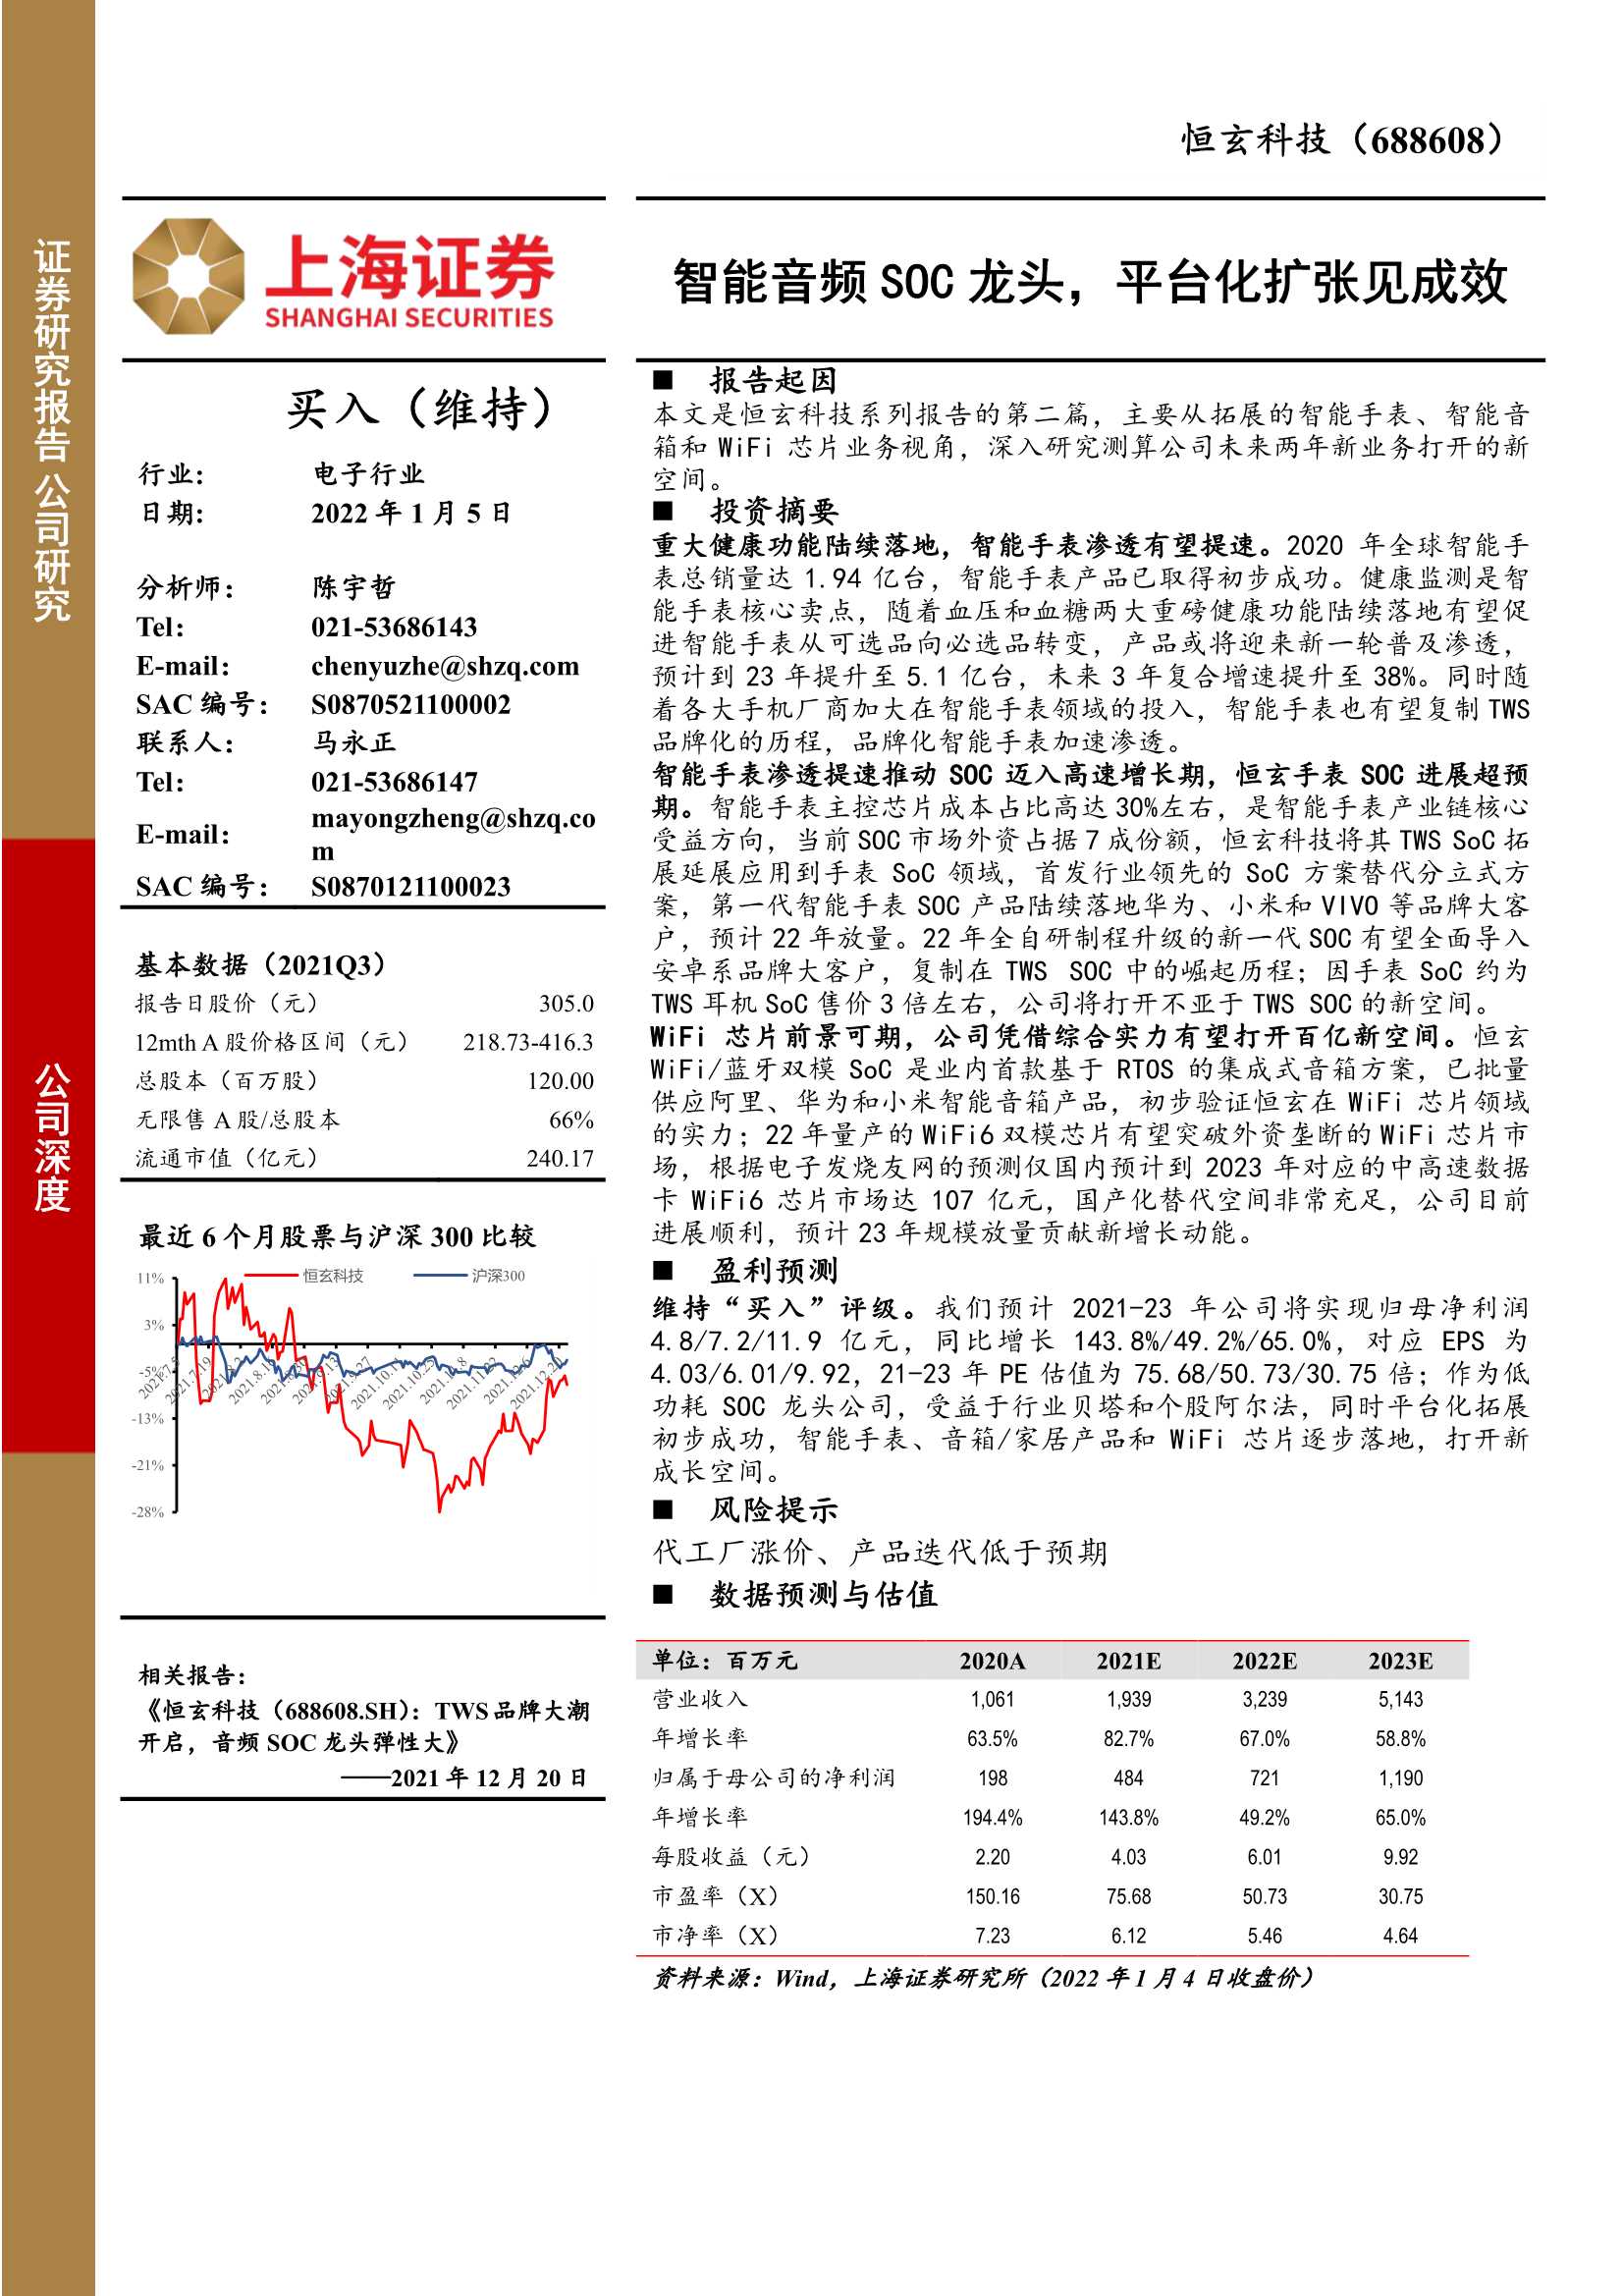 上海证券-恒玄科技-688608-智能音频SOC龙头，平台化扩张见成效-20220105-22页